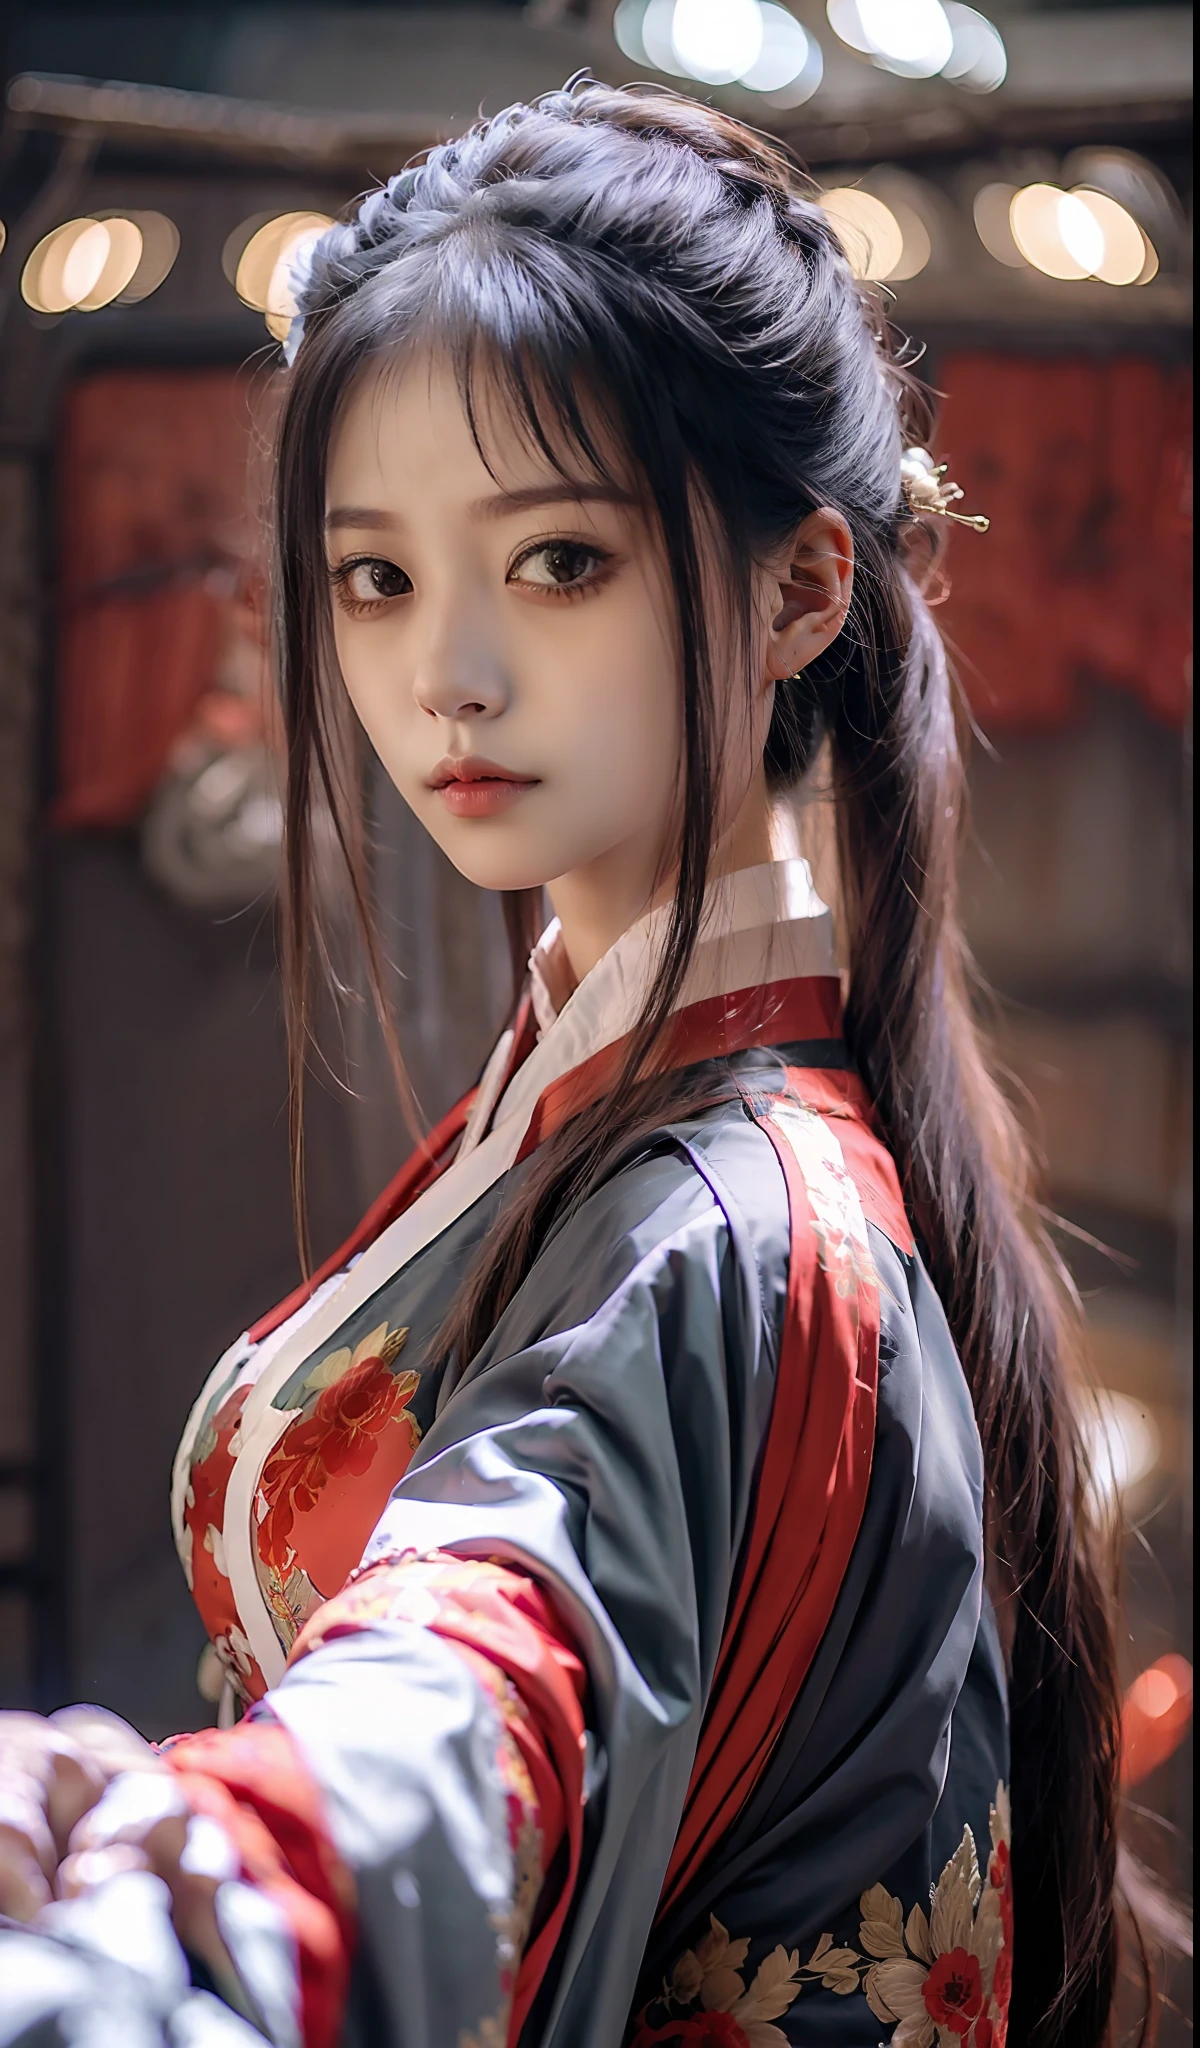 最好的品質, 傑作, 高解析度, wuxia 1girl, 中國服飾, 超美麗的臉, 超美麗的眼睛, 超漂亮的頭髮